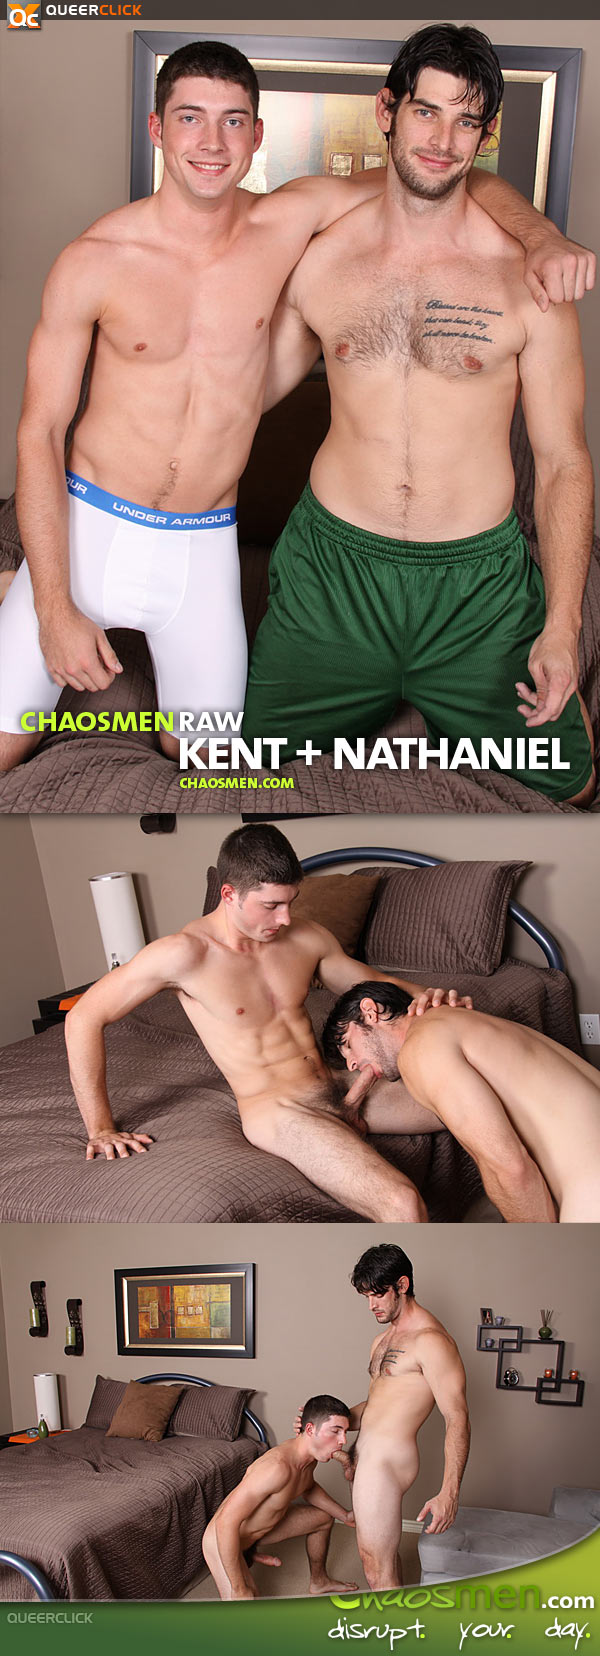 Kent and nathaniel gay porn